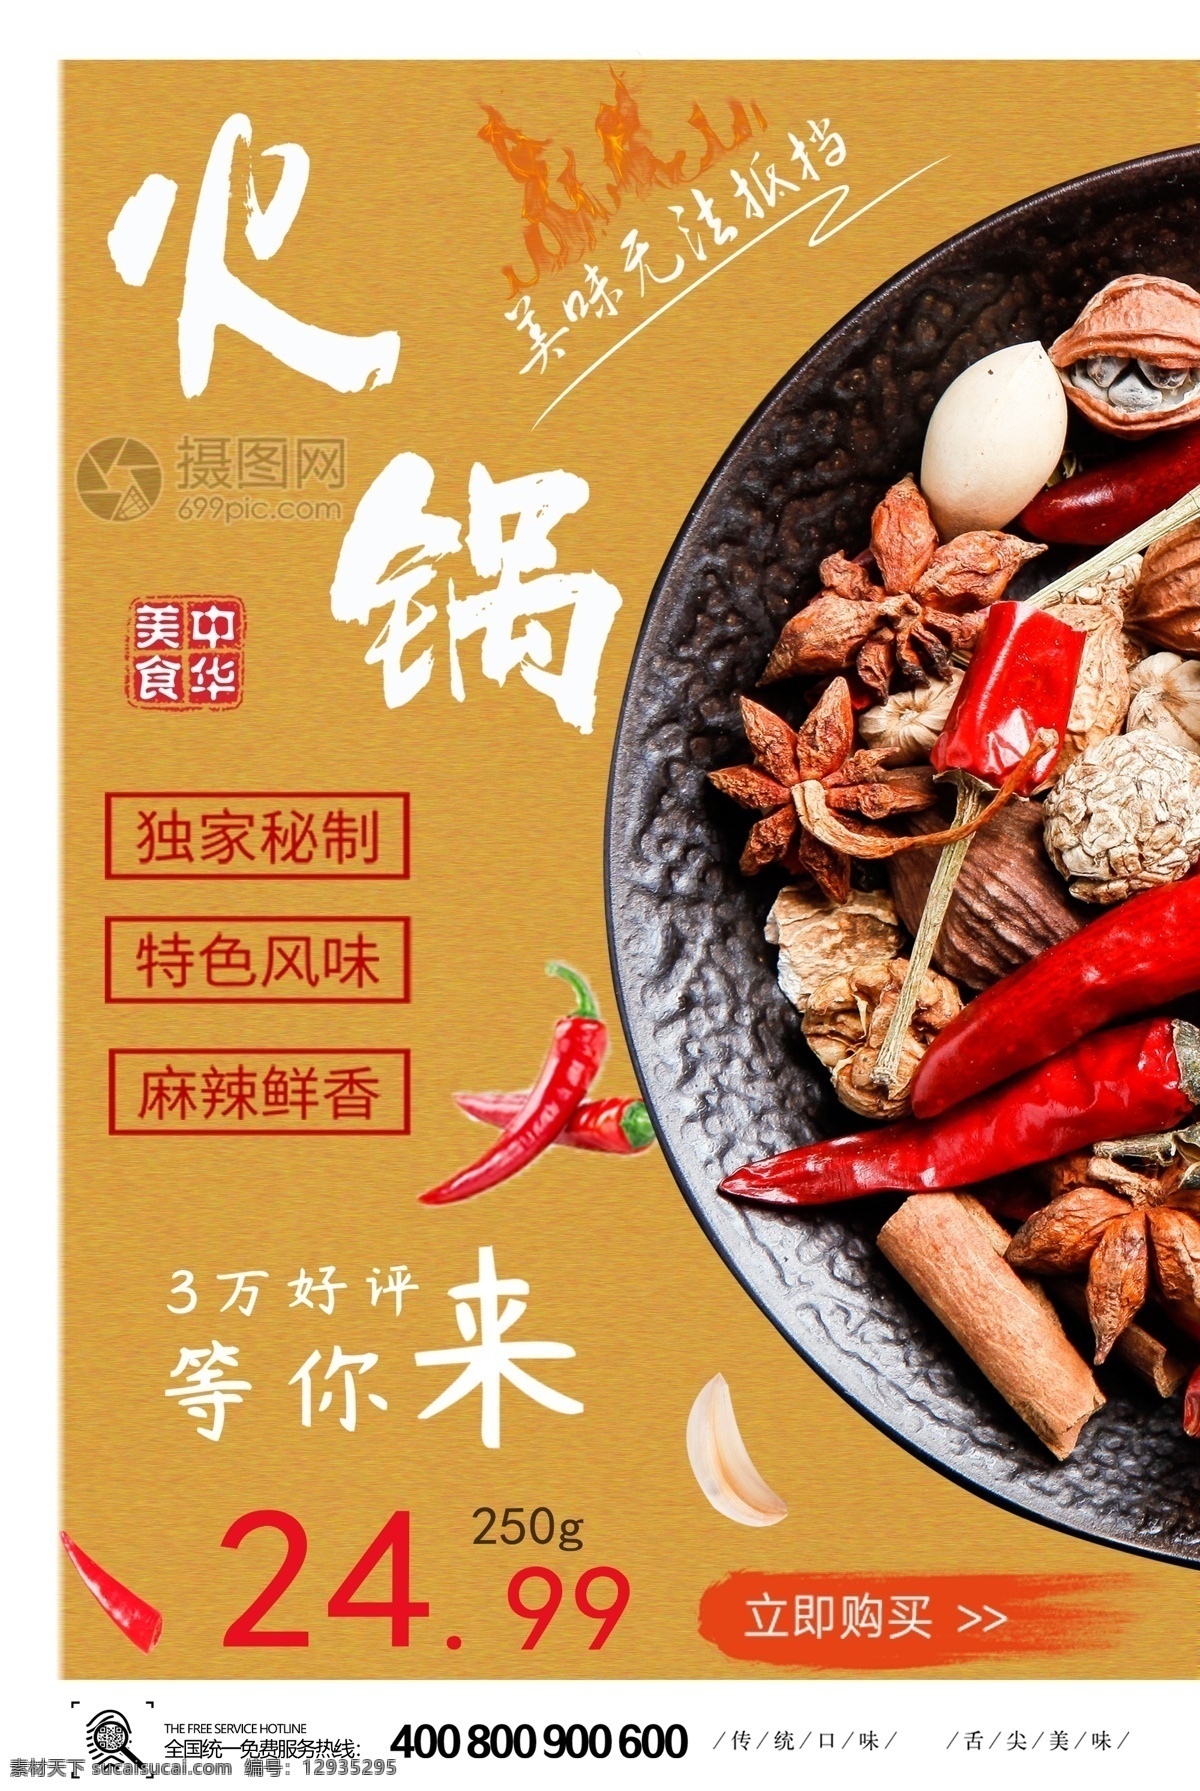 中华 美食 火锅 宣传海报 食物 宣传 火锅海报 海报 美食餐饮 香辣 麻辣